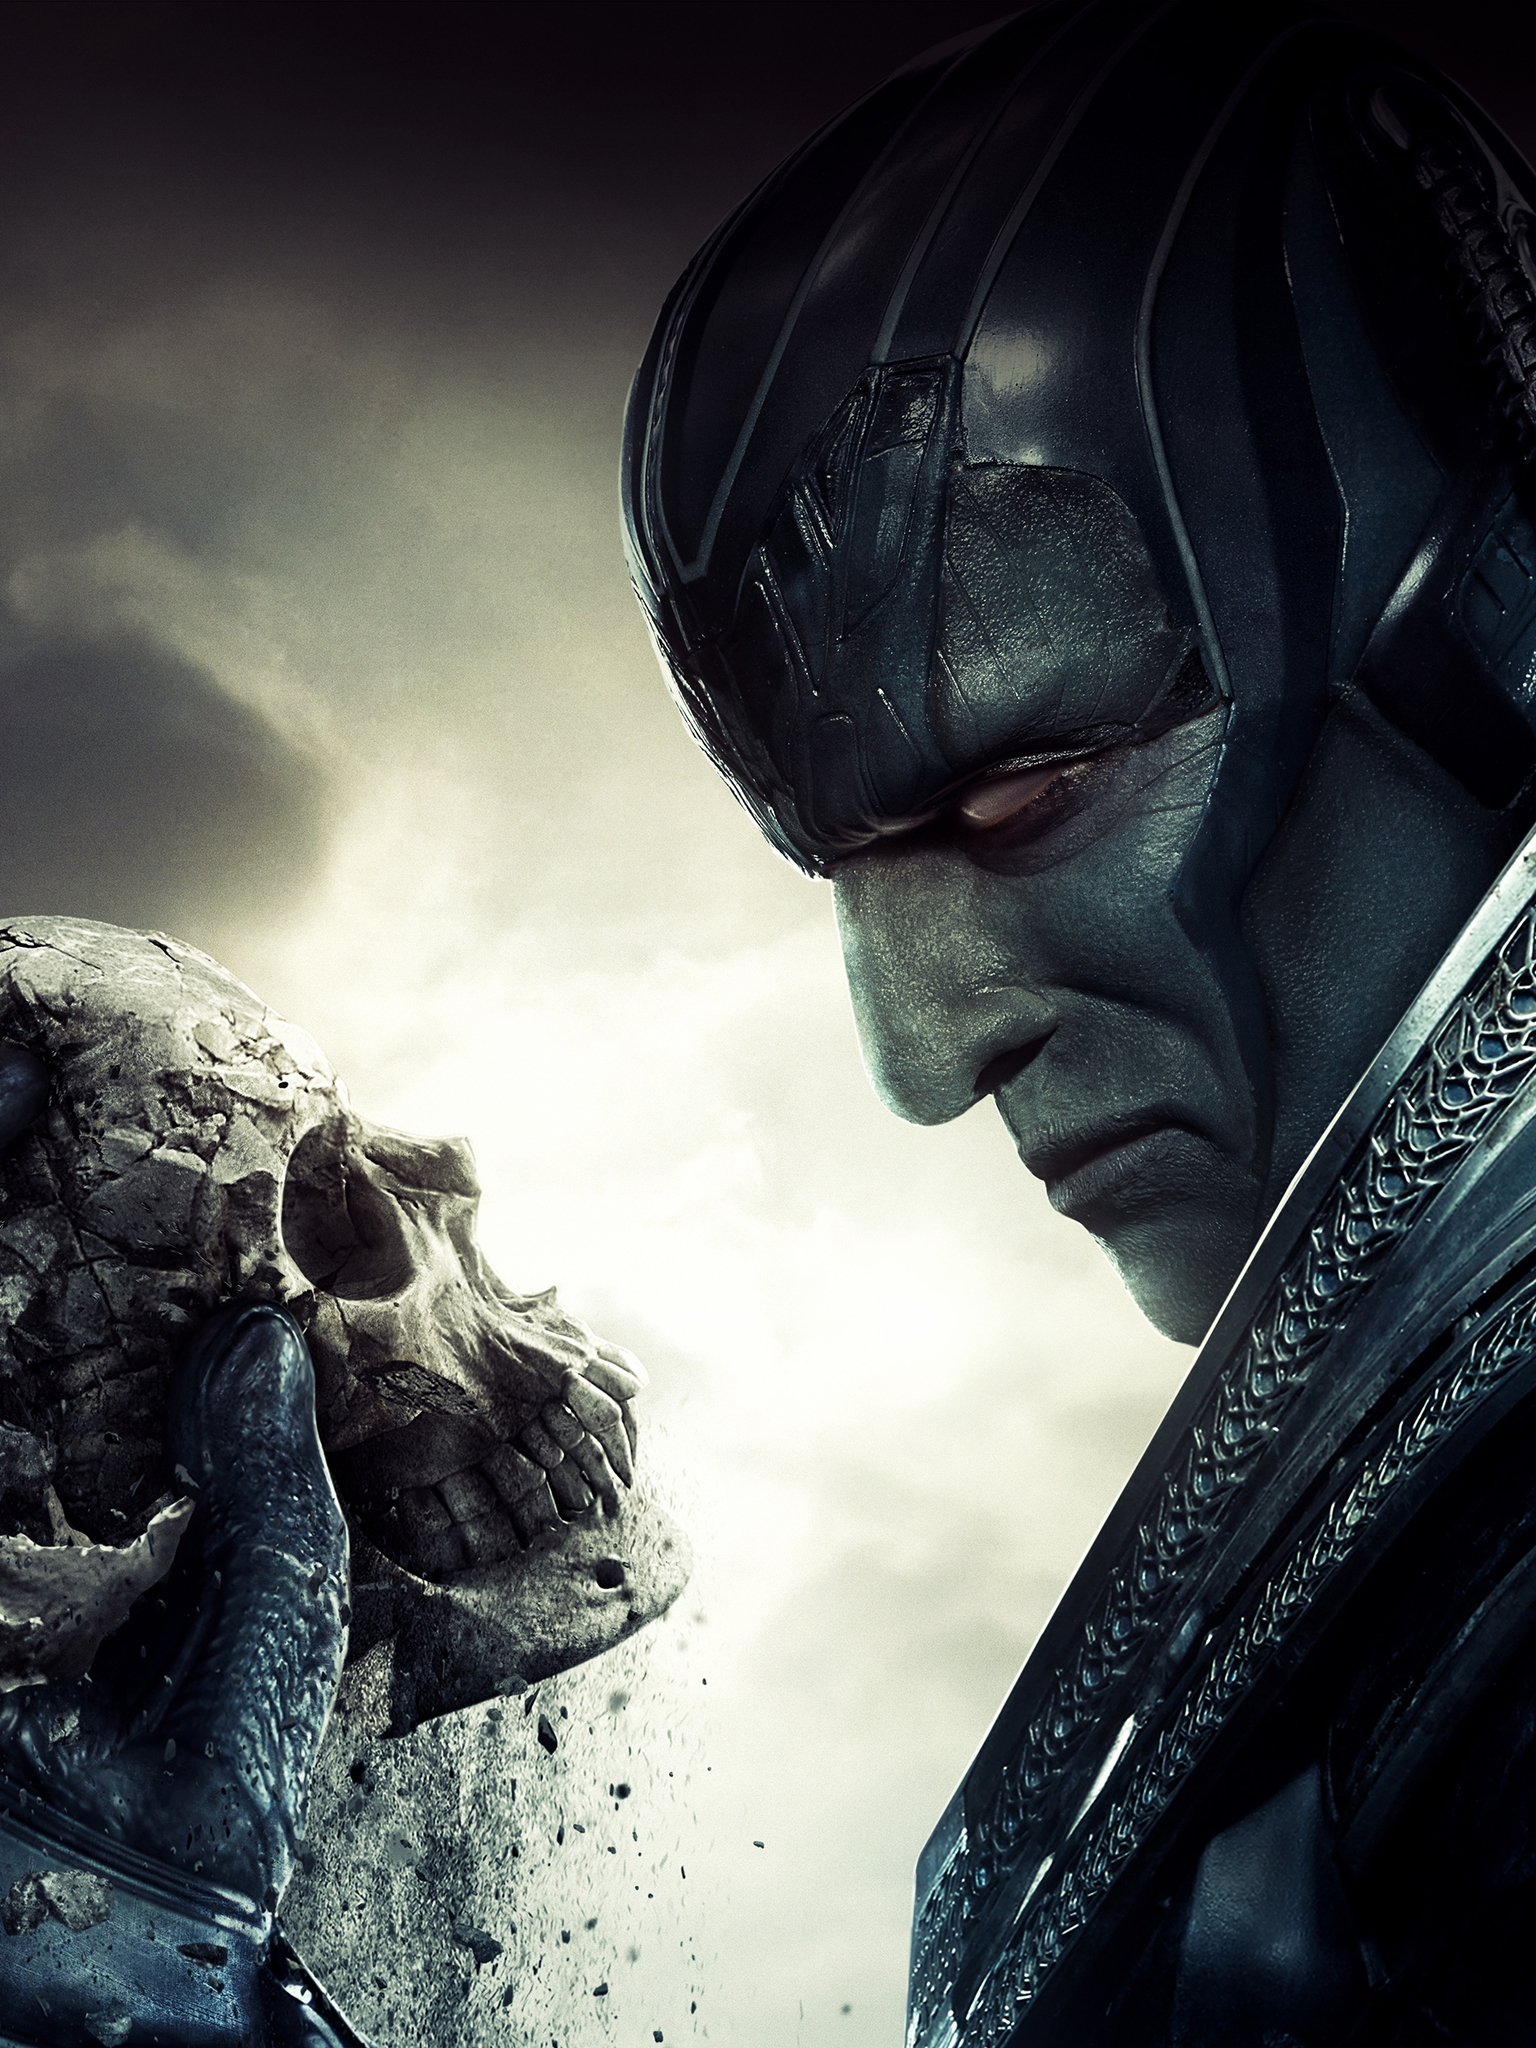 Картинка: Люди Икс, X Men, Apocalypse, En Sabah Nur, мутант, суперзлодей, череп., взгляд, разрушение